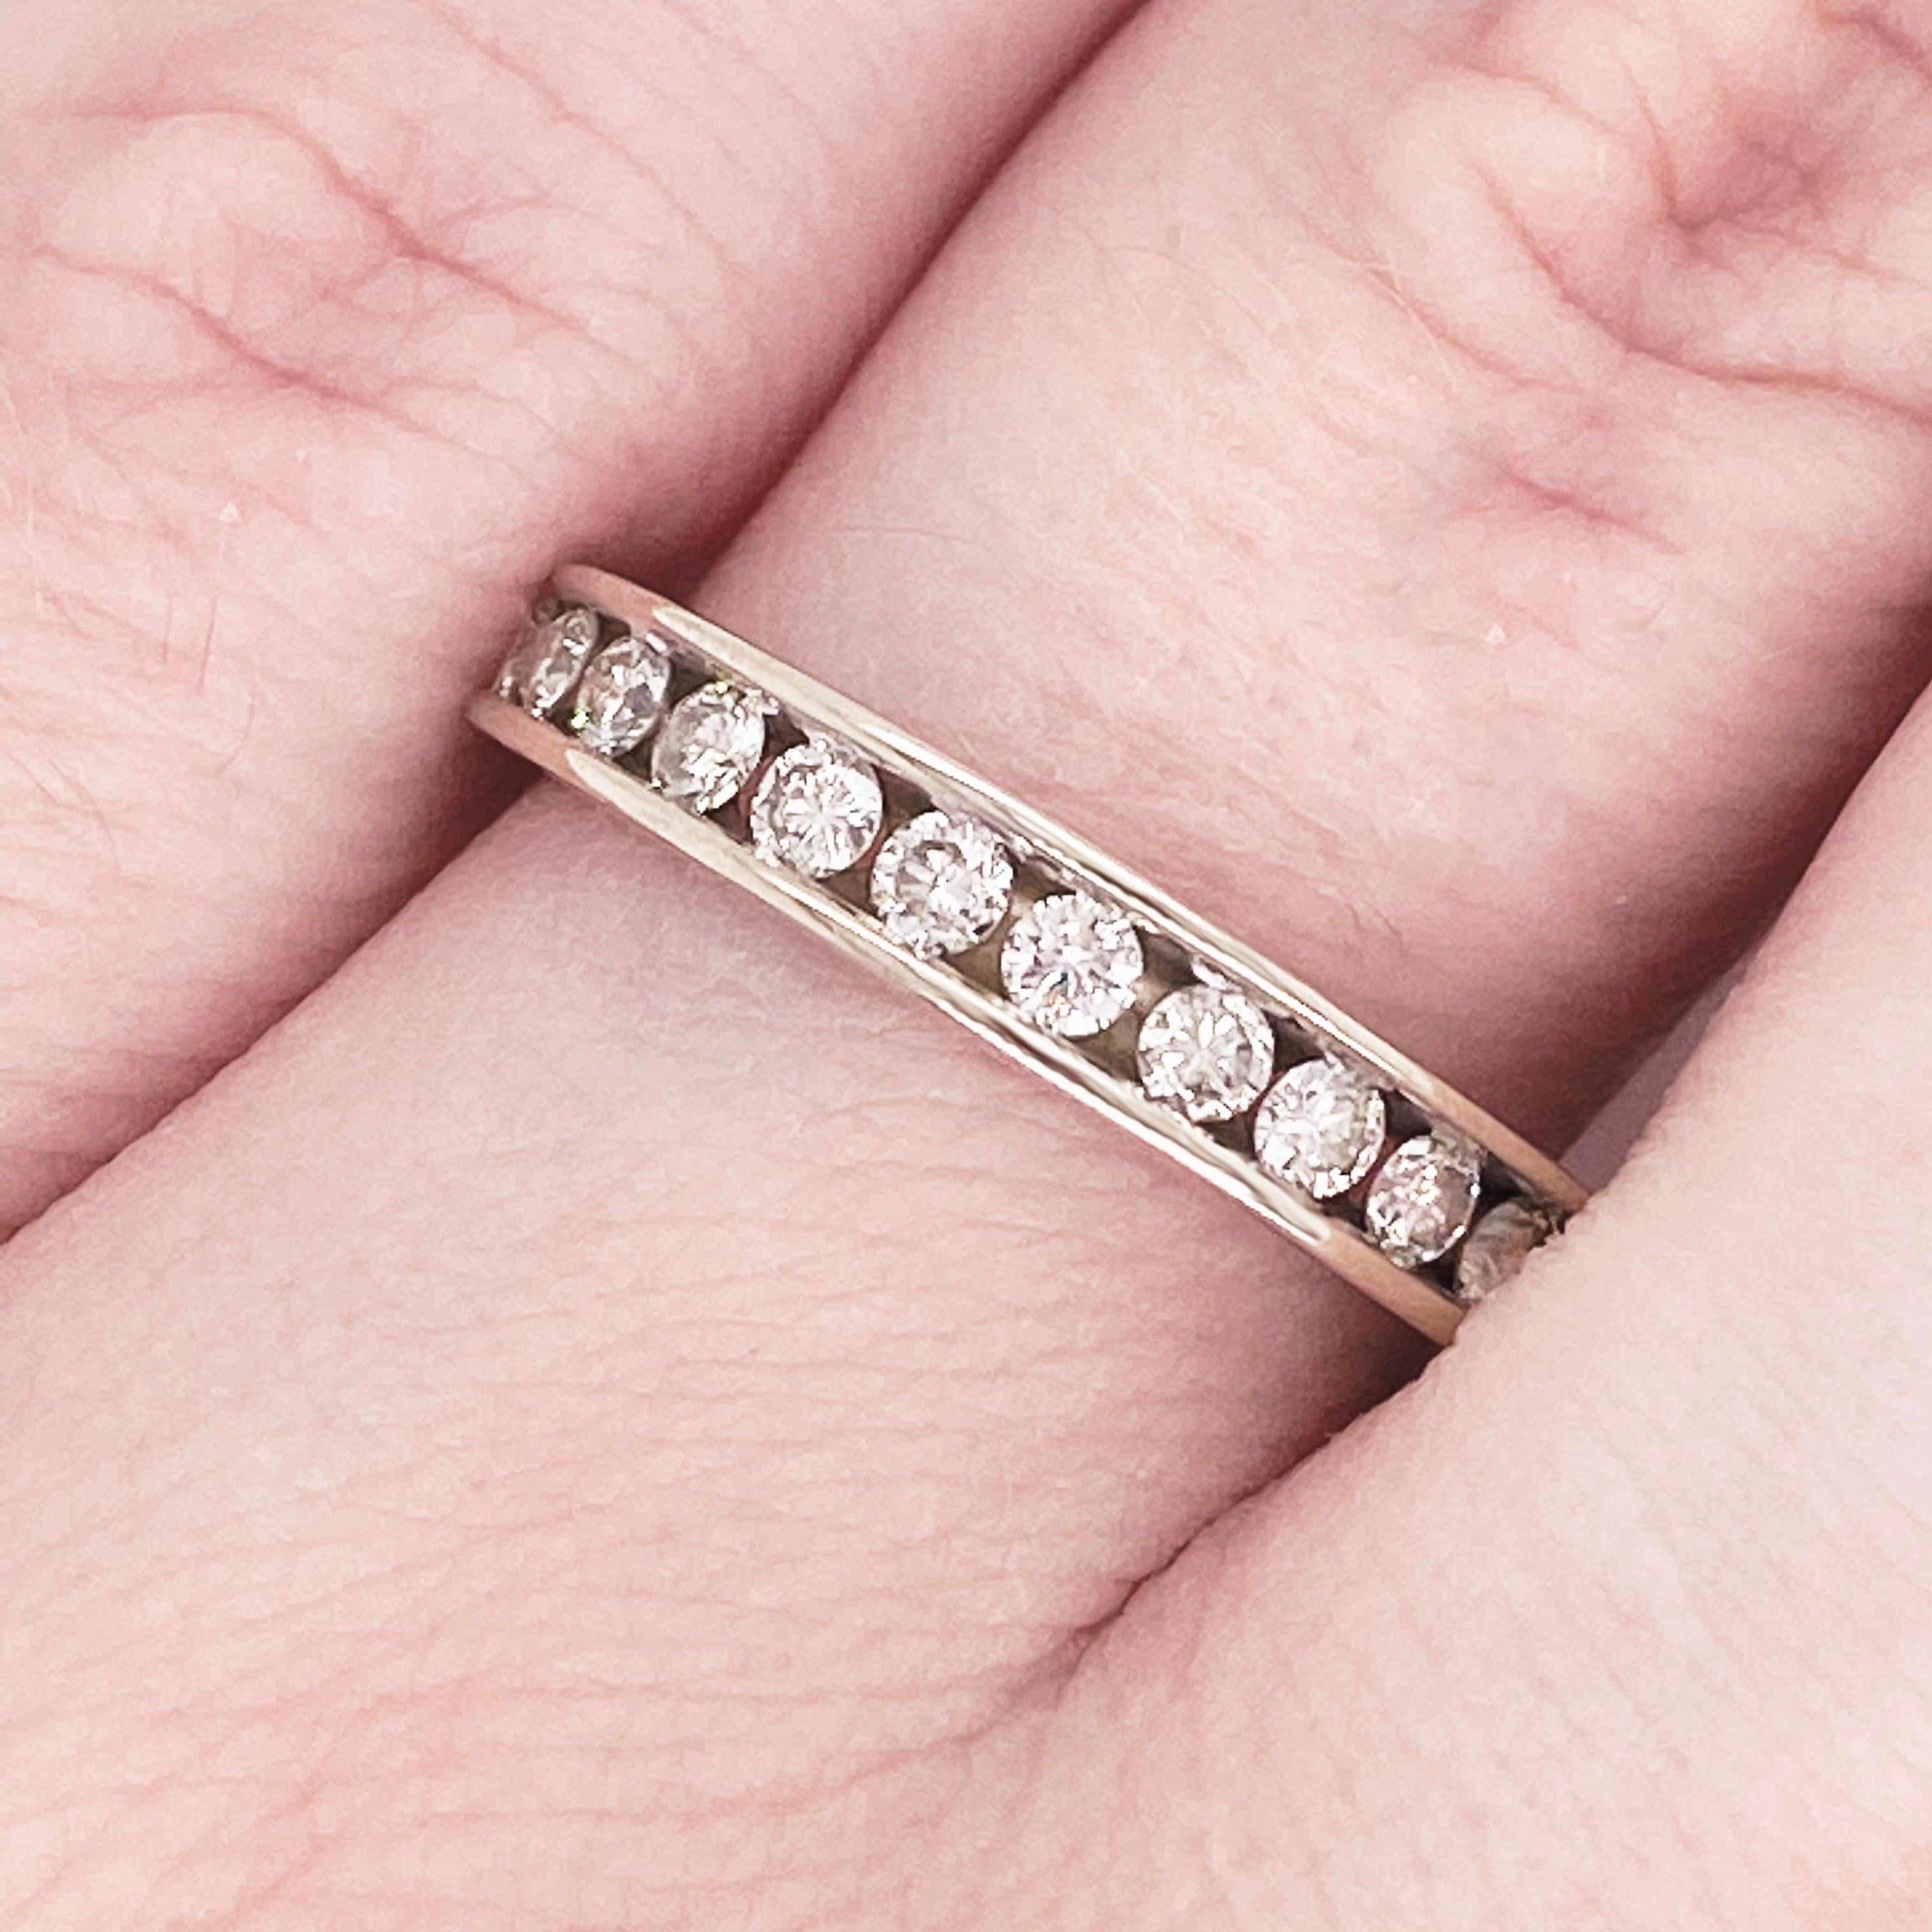 Dieses atemberaubend schöne Band aus poliertem Weißgold, das mit runden Diamanten besetzt ist, bietet einen Look, der sehr klassisch und modern zugleich ist! Dieser Ring ist sehr modisch und kann jedem Outfit einen Hauch von Stil verleihen, dennoch